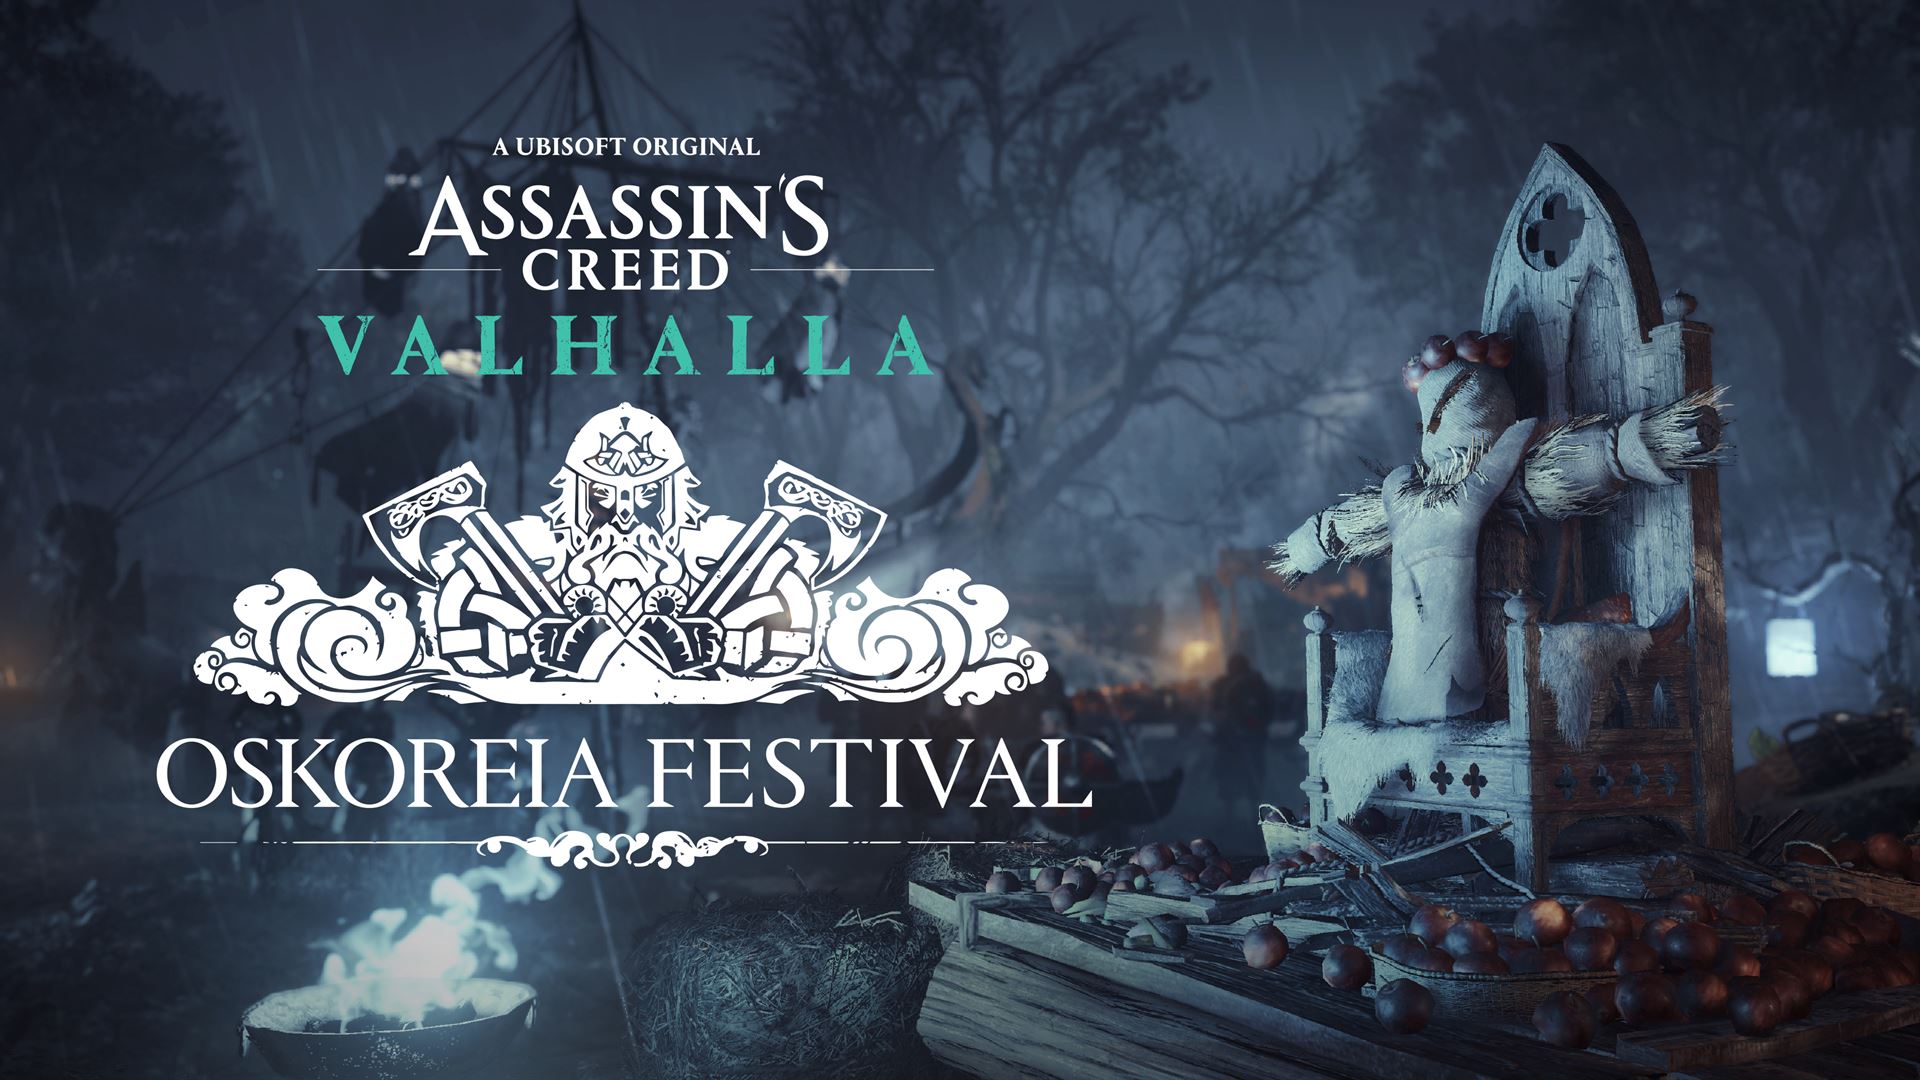 การเฉลิมฉลองครบรอบ 15 ปีของ Assassin's Creed® ดำเนินต่อไปด้วยคอนเทนต์ใหม่ฟรีใน Assassin's Creed Valhalla และนิทรรศการศิลปะดิจิทัลที่ไม่เหมือนใคร